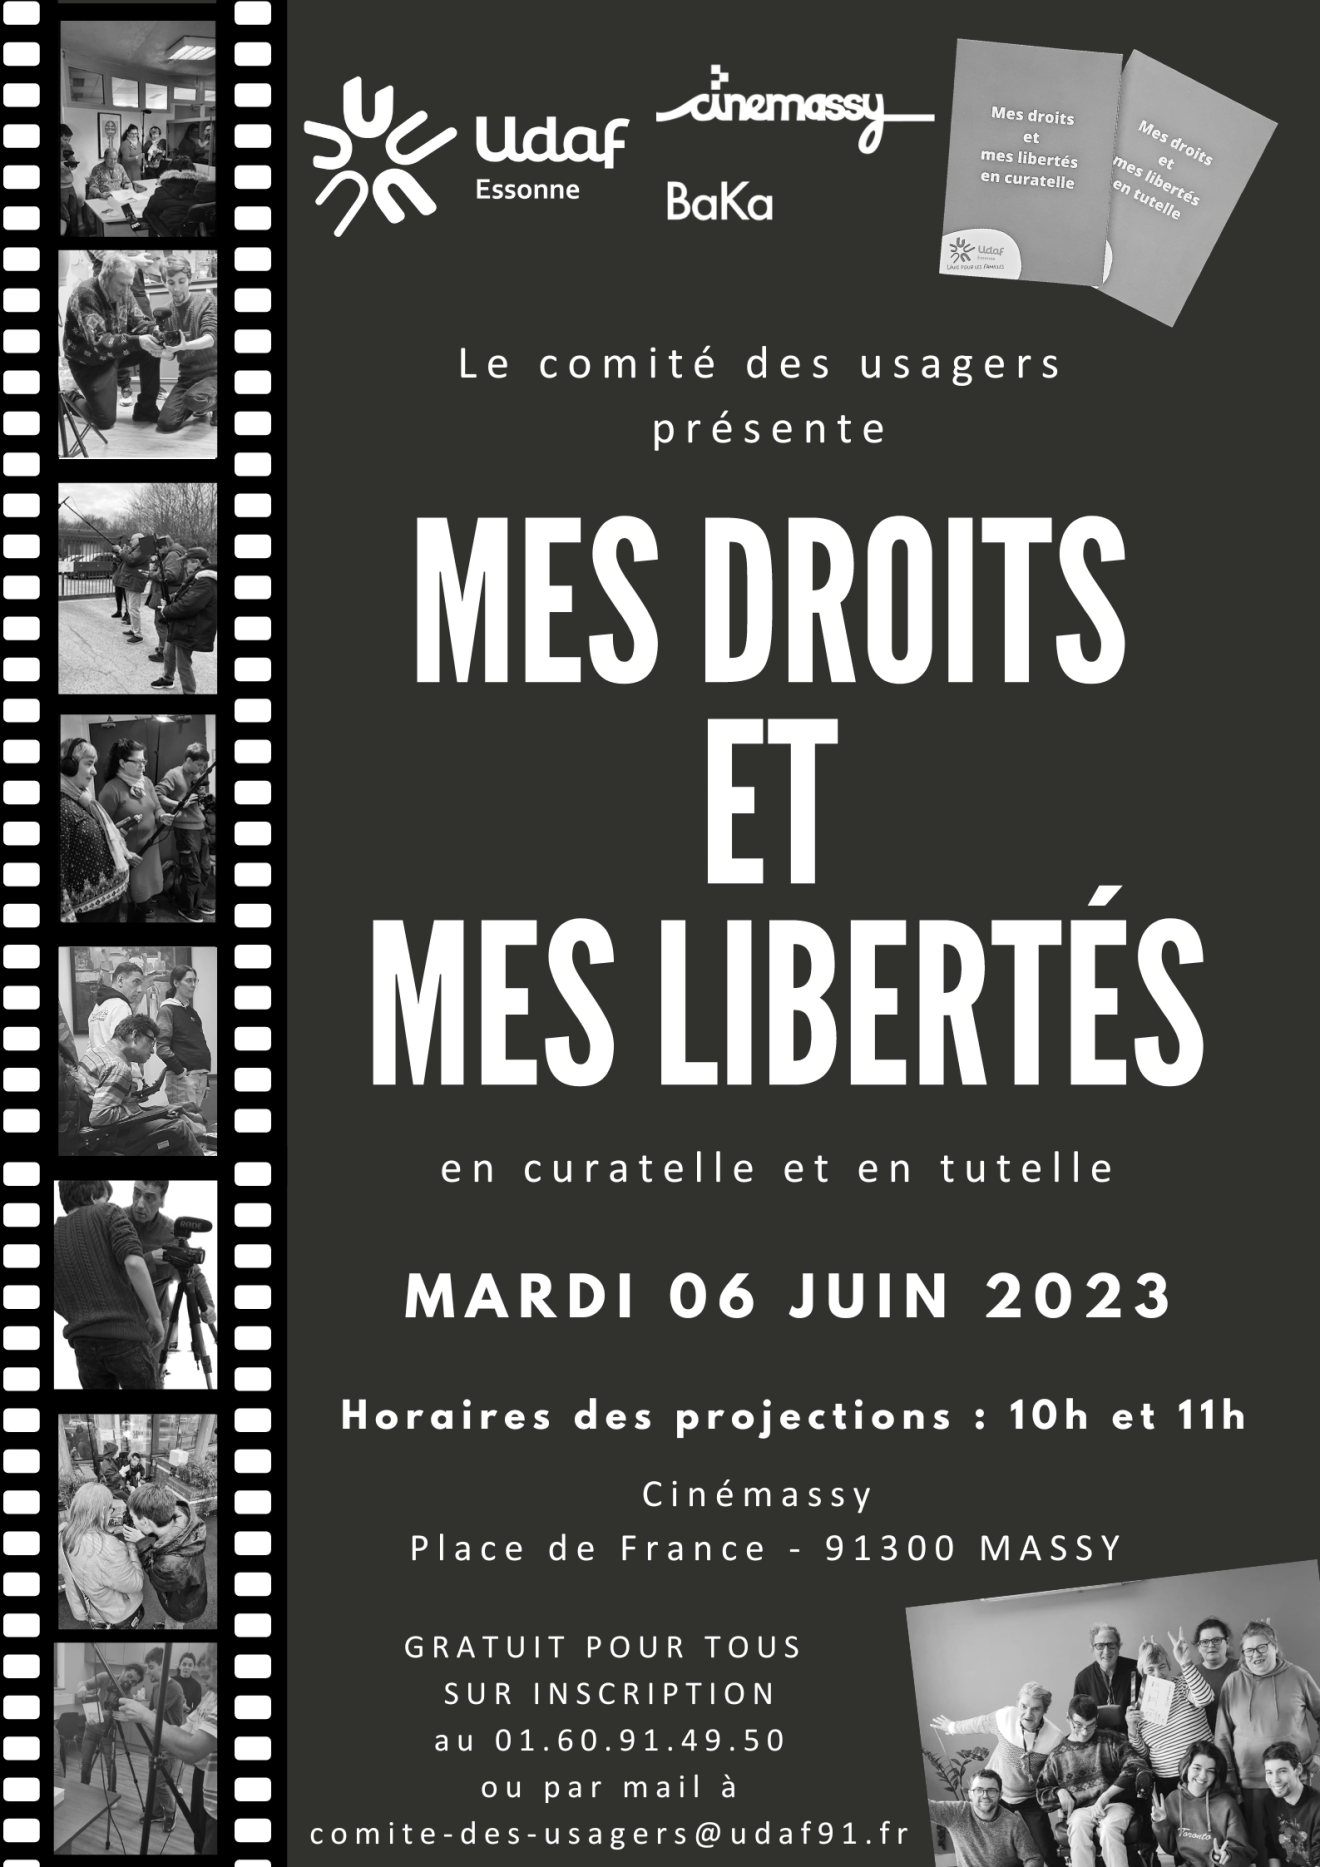 Le comité des usagers PJM fait son cinéma et présente ＂Mes droits et libertés en tutelle et curatelle＂